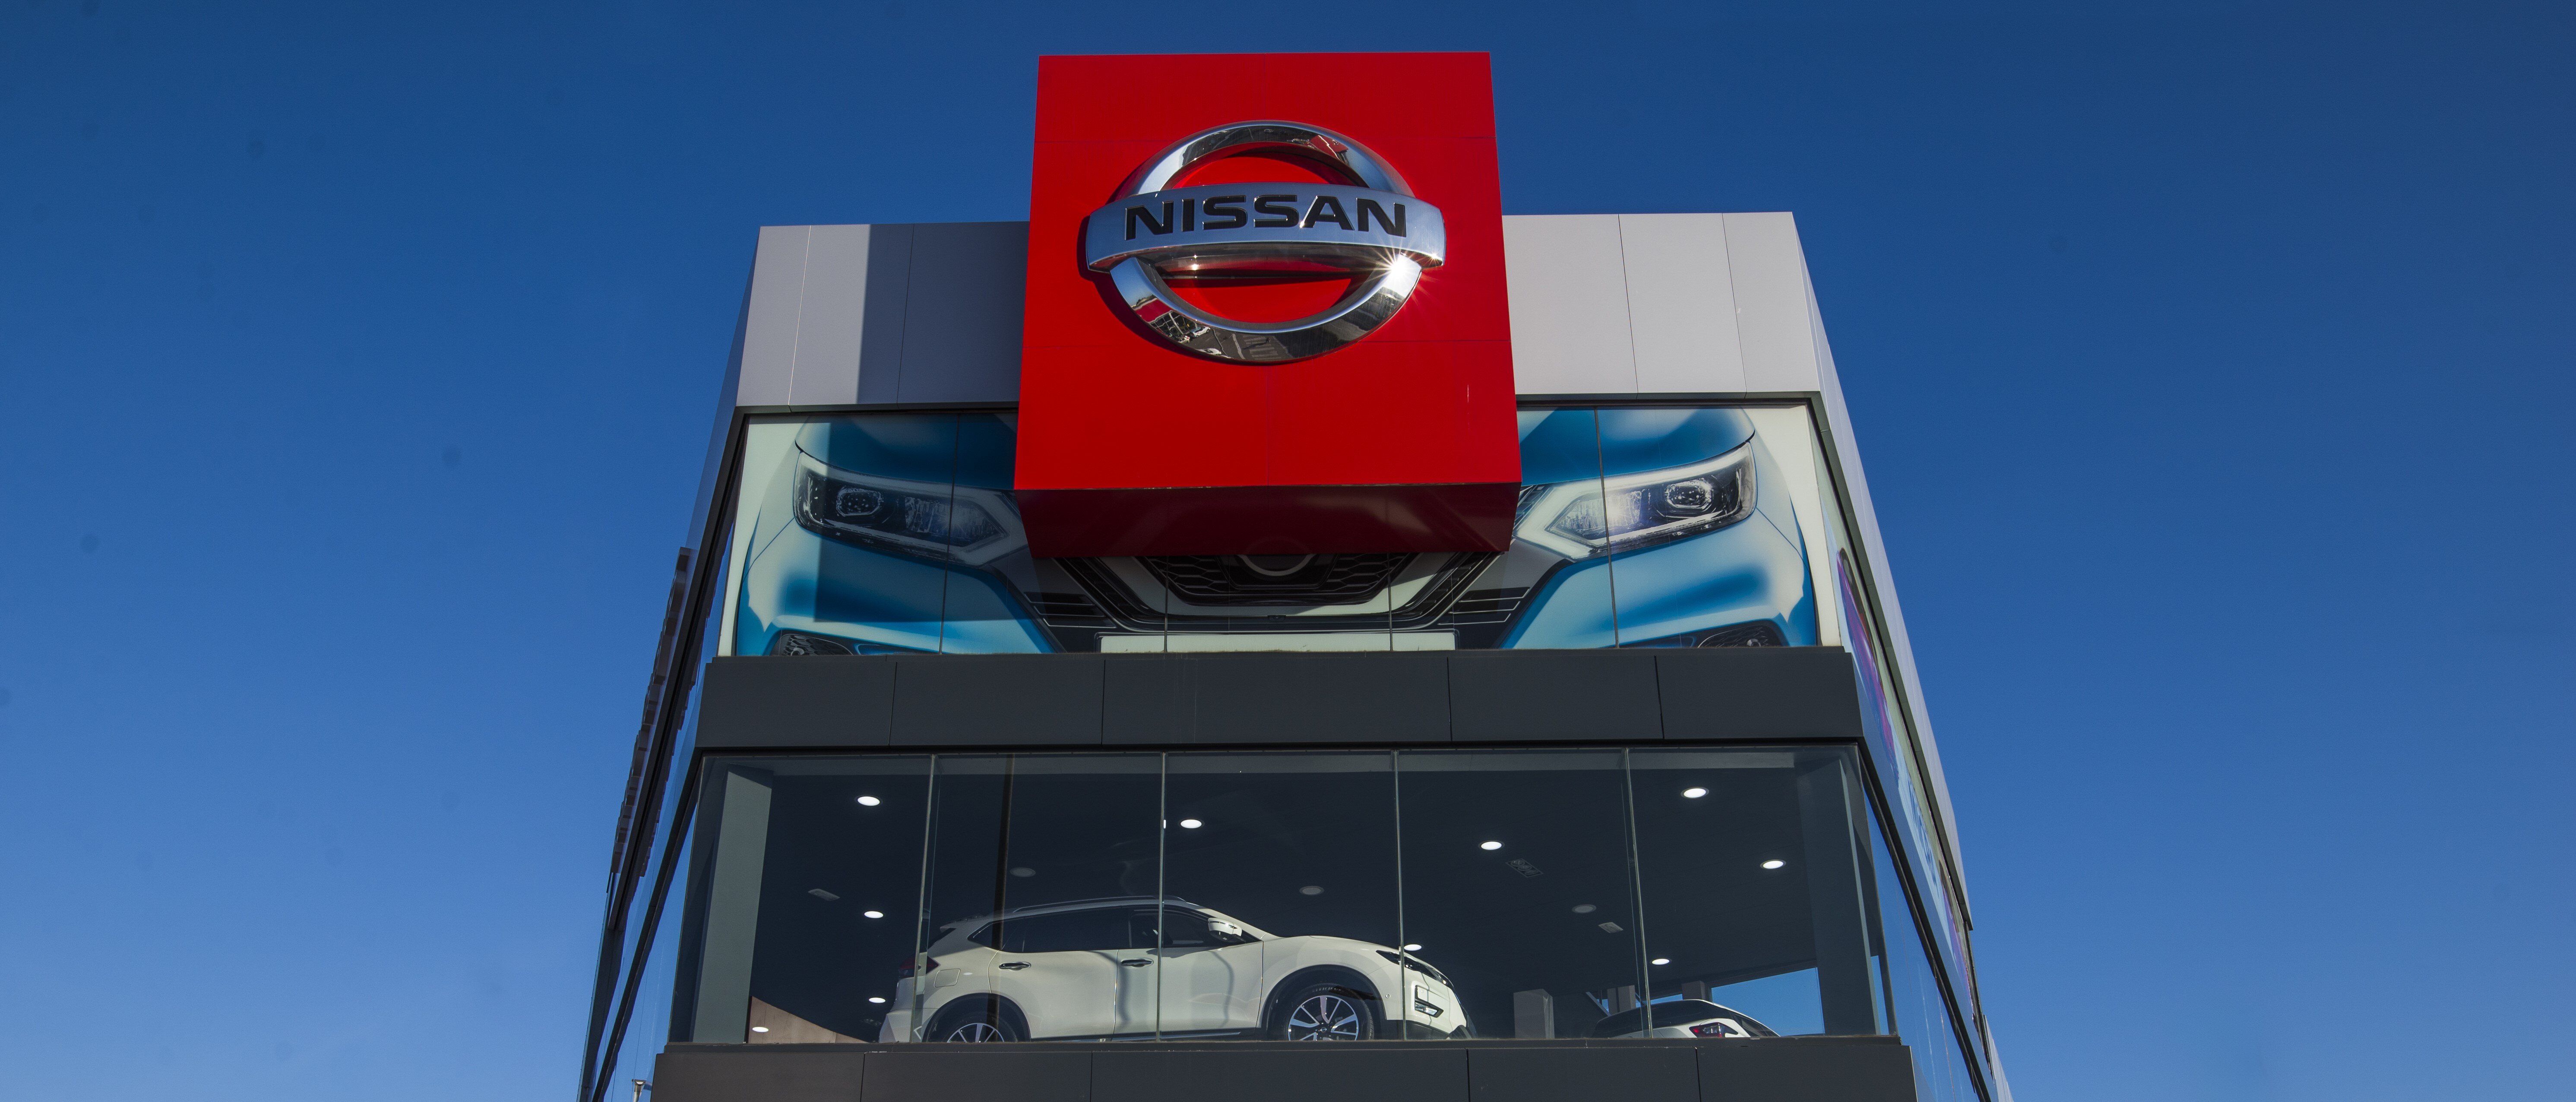 BLENDIO PARAYAS gana el Nissan Global Award 2023